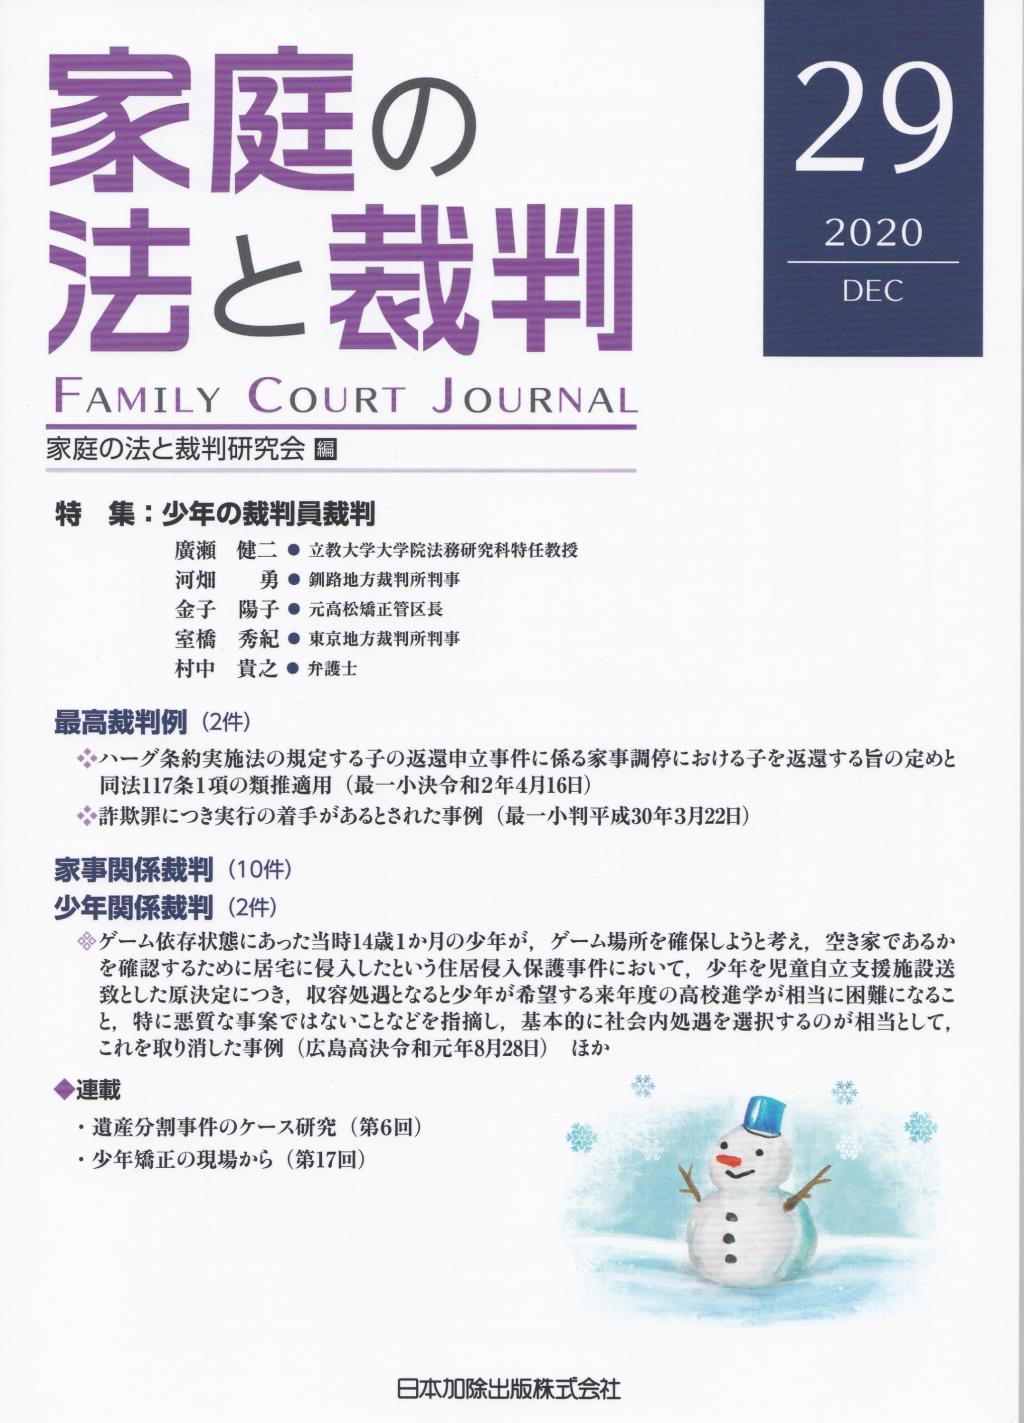 家庭の法と裁判 2020 DEC No.29